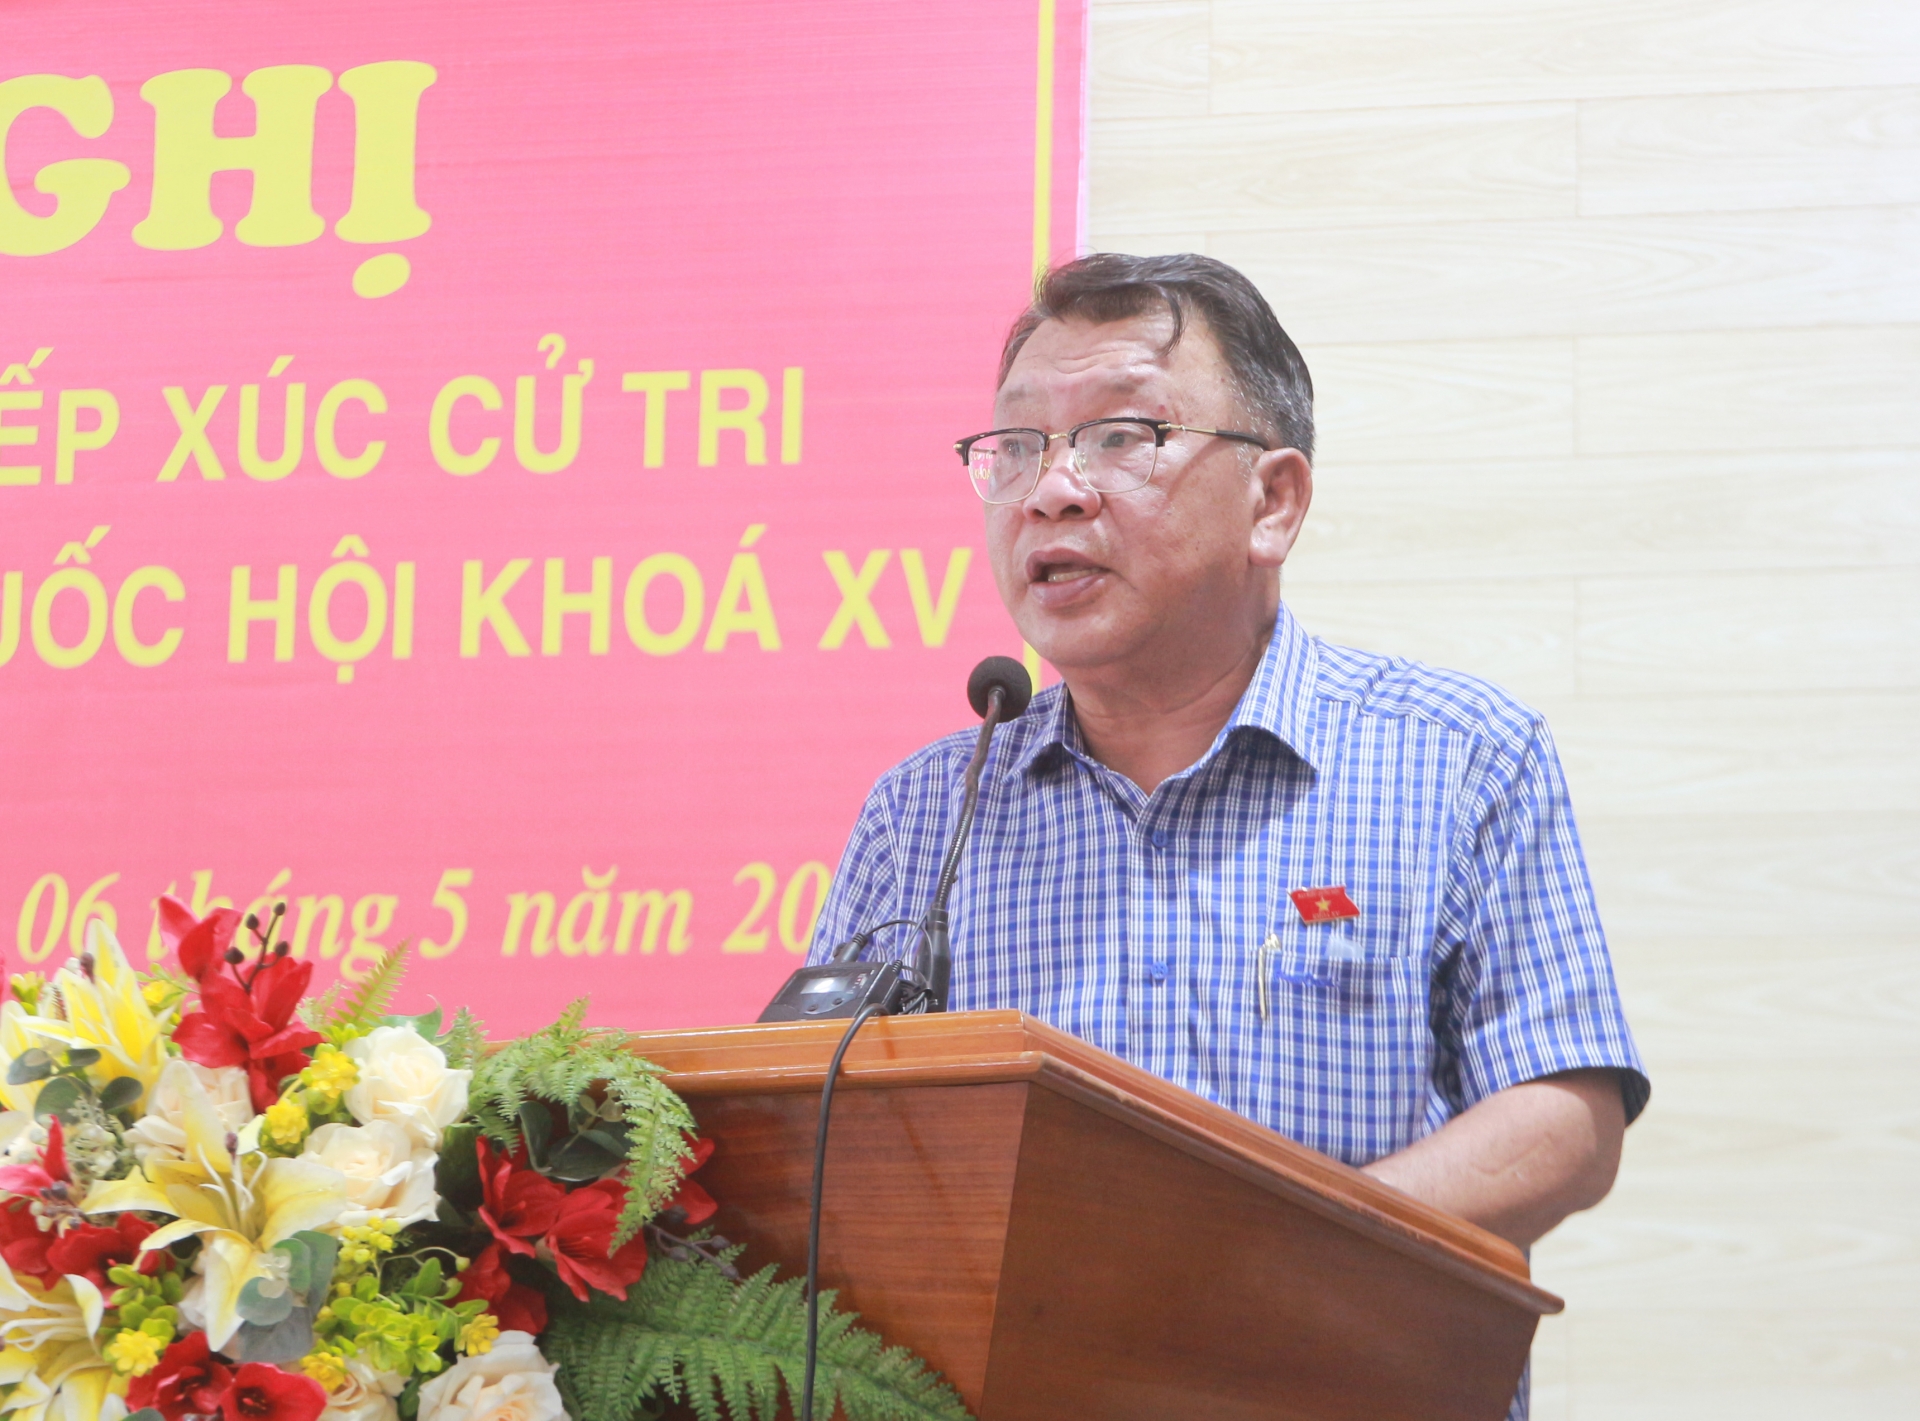 Ông Nguyễn Tạo - Phó trưởng Đoàn chuyên trách Đoàn ĐBQH tỉnh tiếp thu, ghi nhận ý kiến, kiến nghị của cử tri